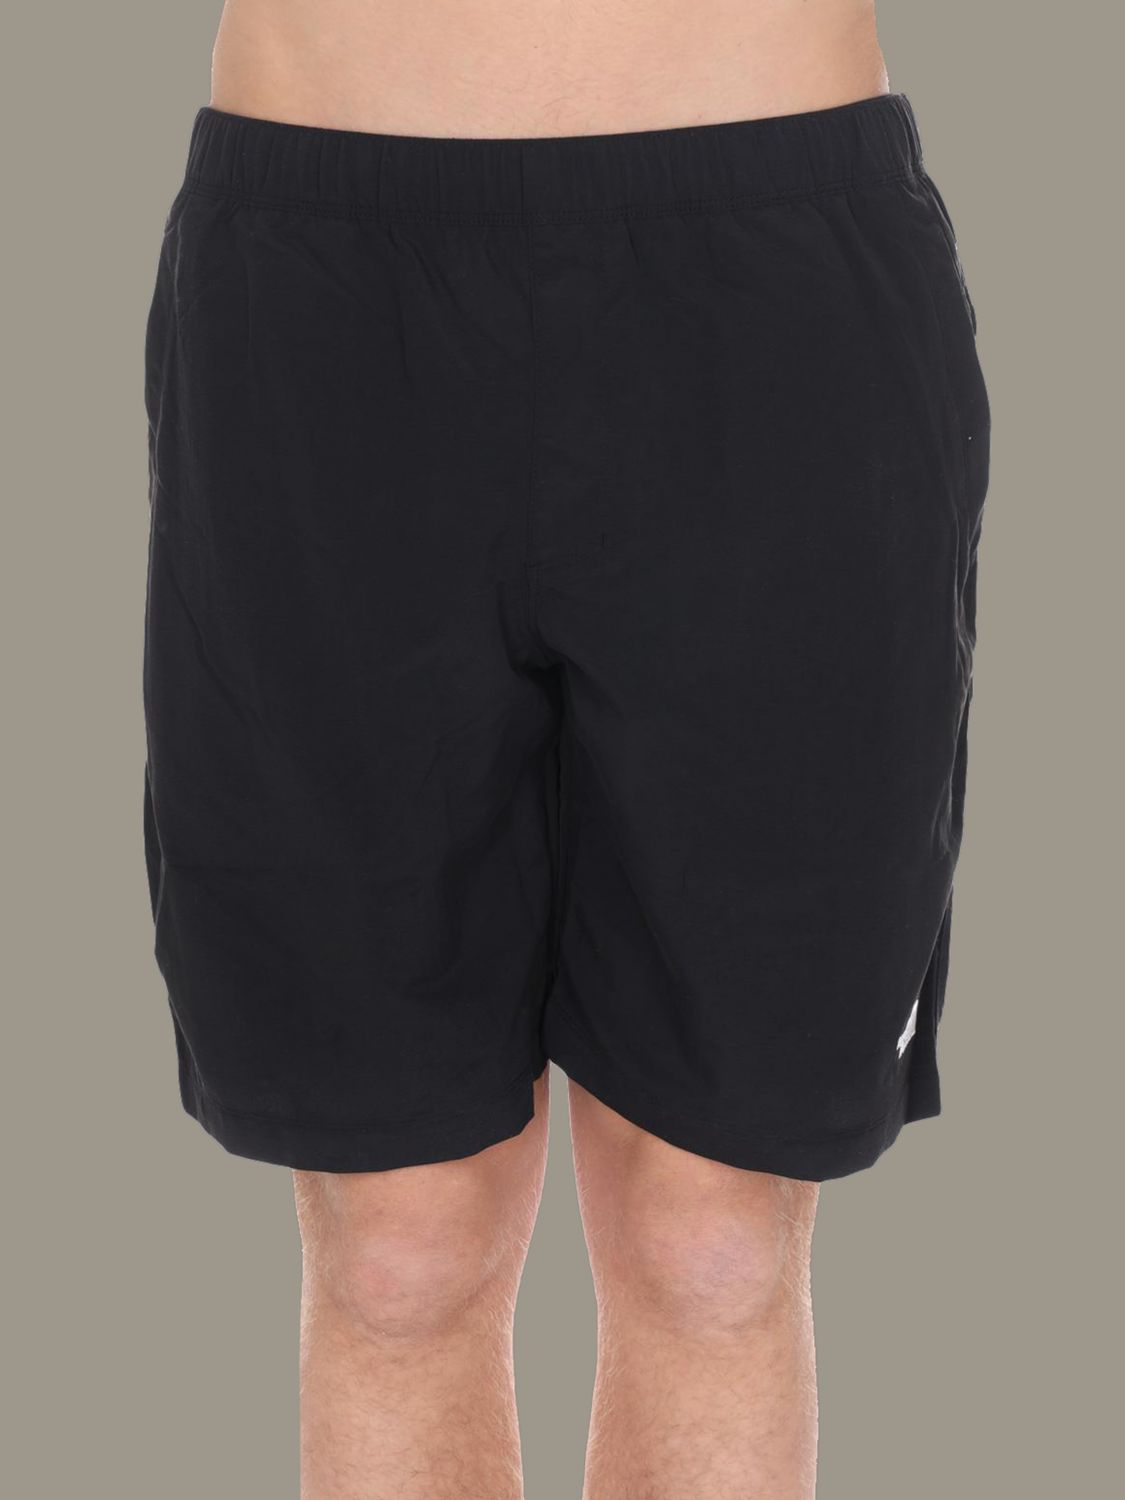 north face bermuda shorts